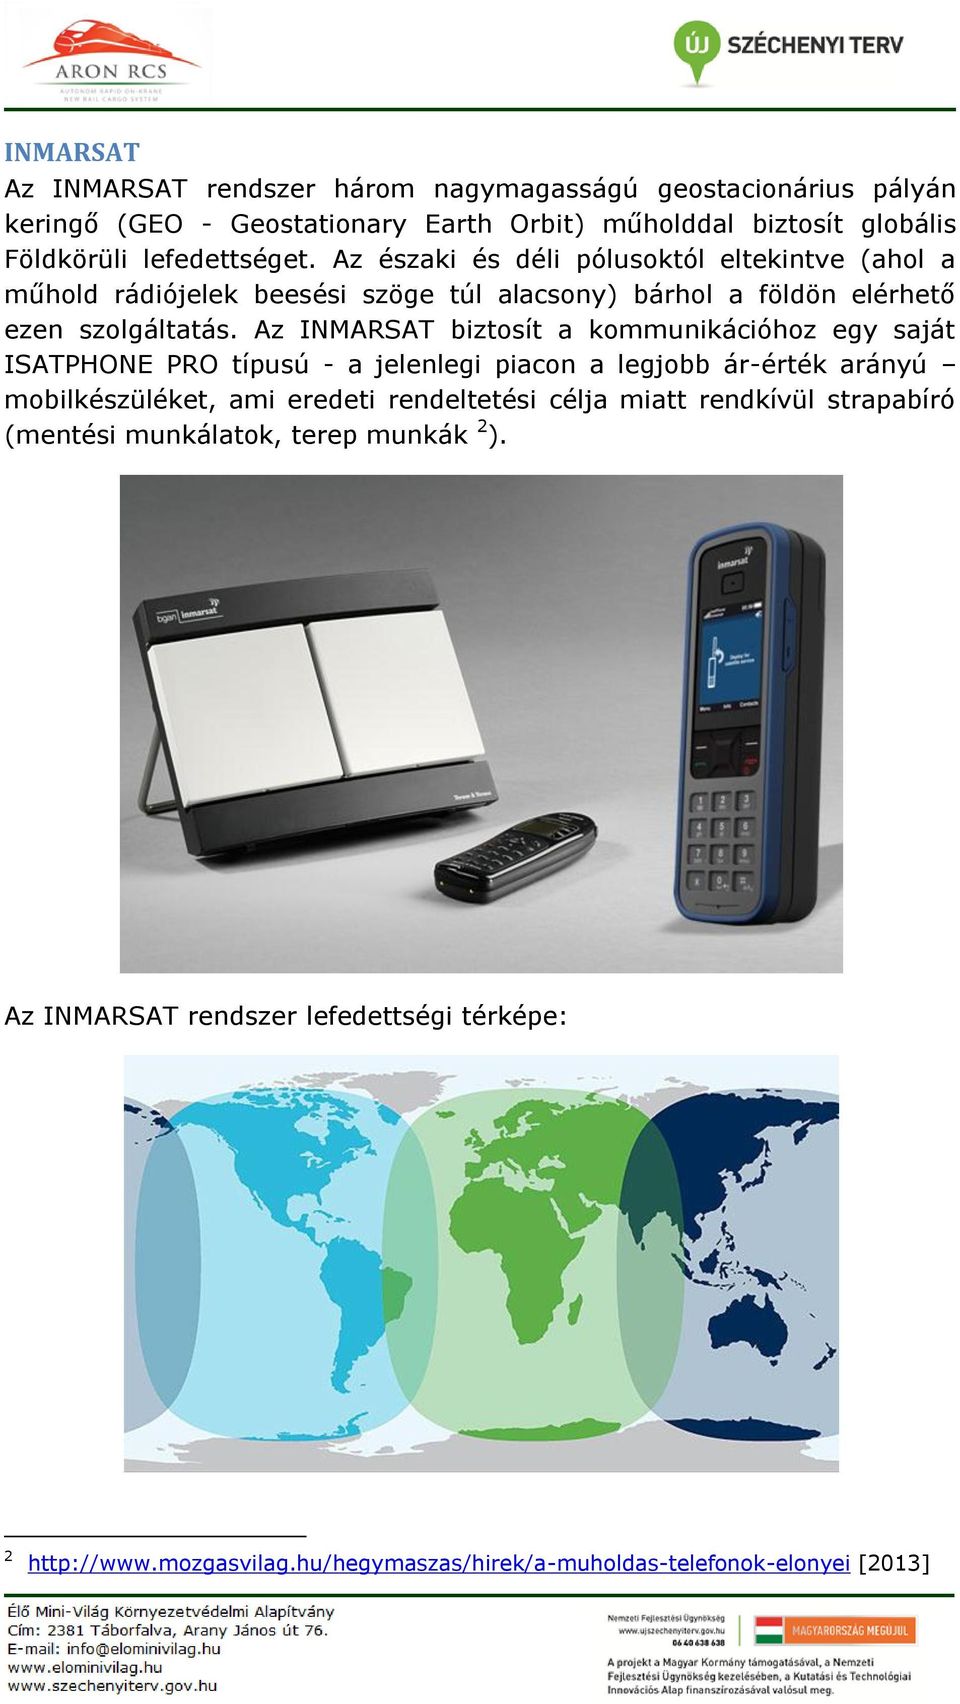 Az INMARSAT biztosít a kommunikációhoz egy saját ISATPHONE PRO típusú - a jelenlegi piacon a legjobb ár-érték arányú mobilkészüléket, ami eredeti rendeltetési célja